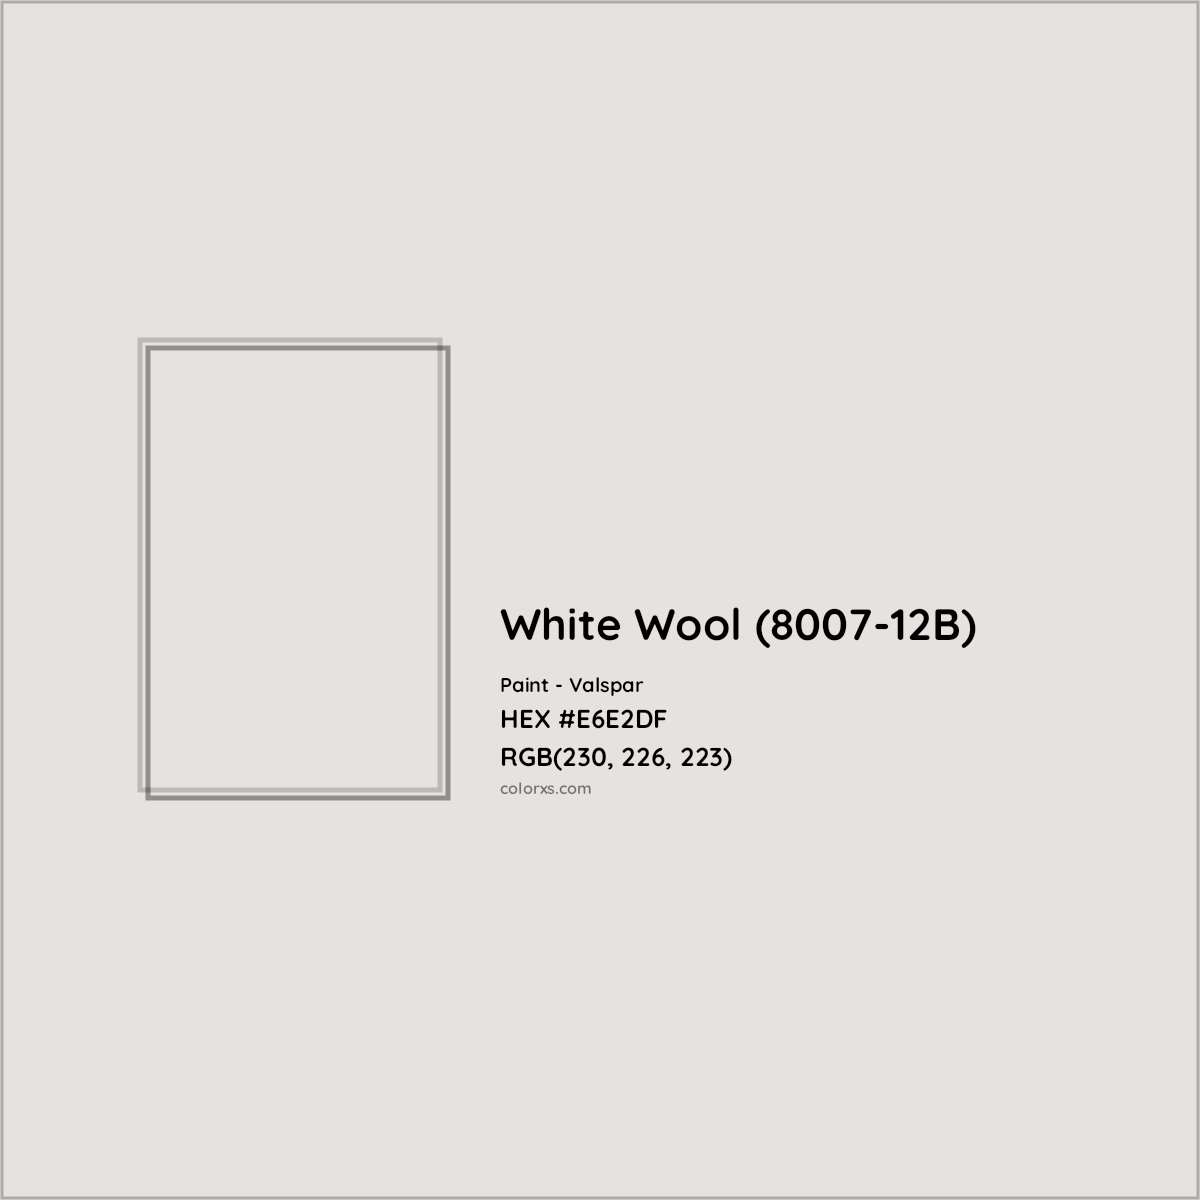 HEX #E6E2DF White Wool (8007-12B) Paint Valspar - Color Code